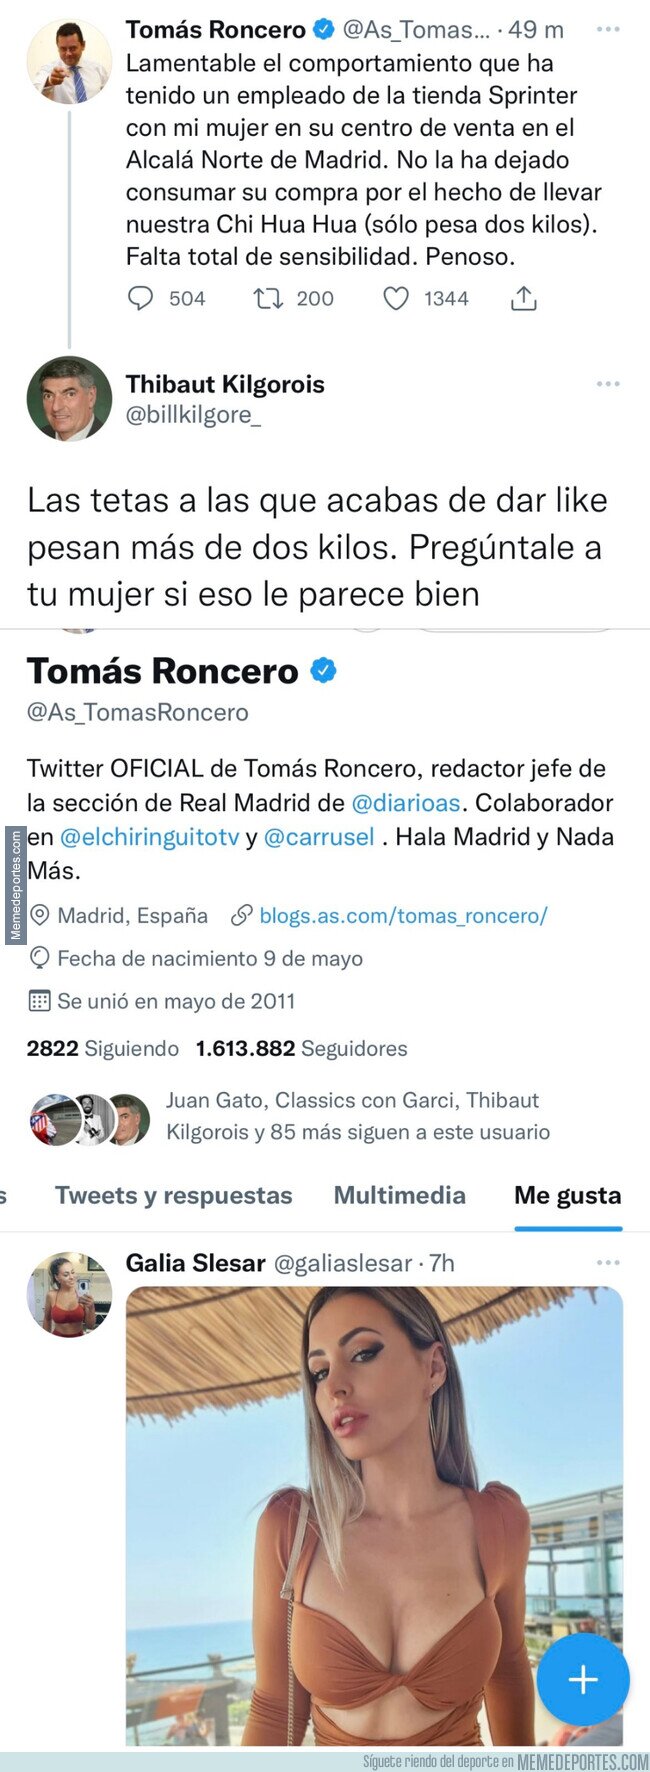 1164563 - El megazasca monumental de este usuario de Twitter a Tomás Roncero